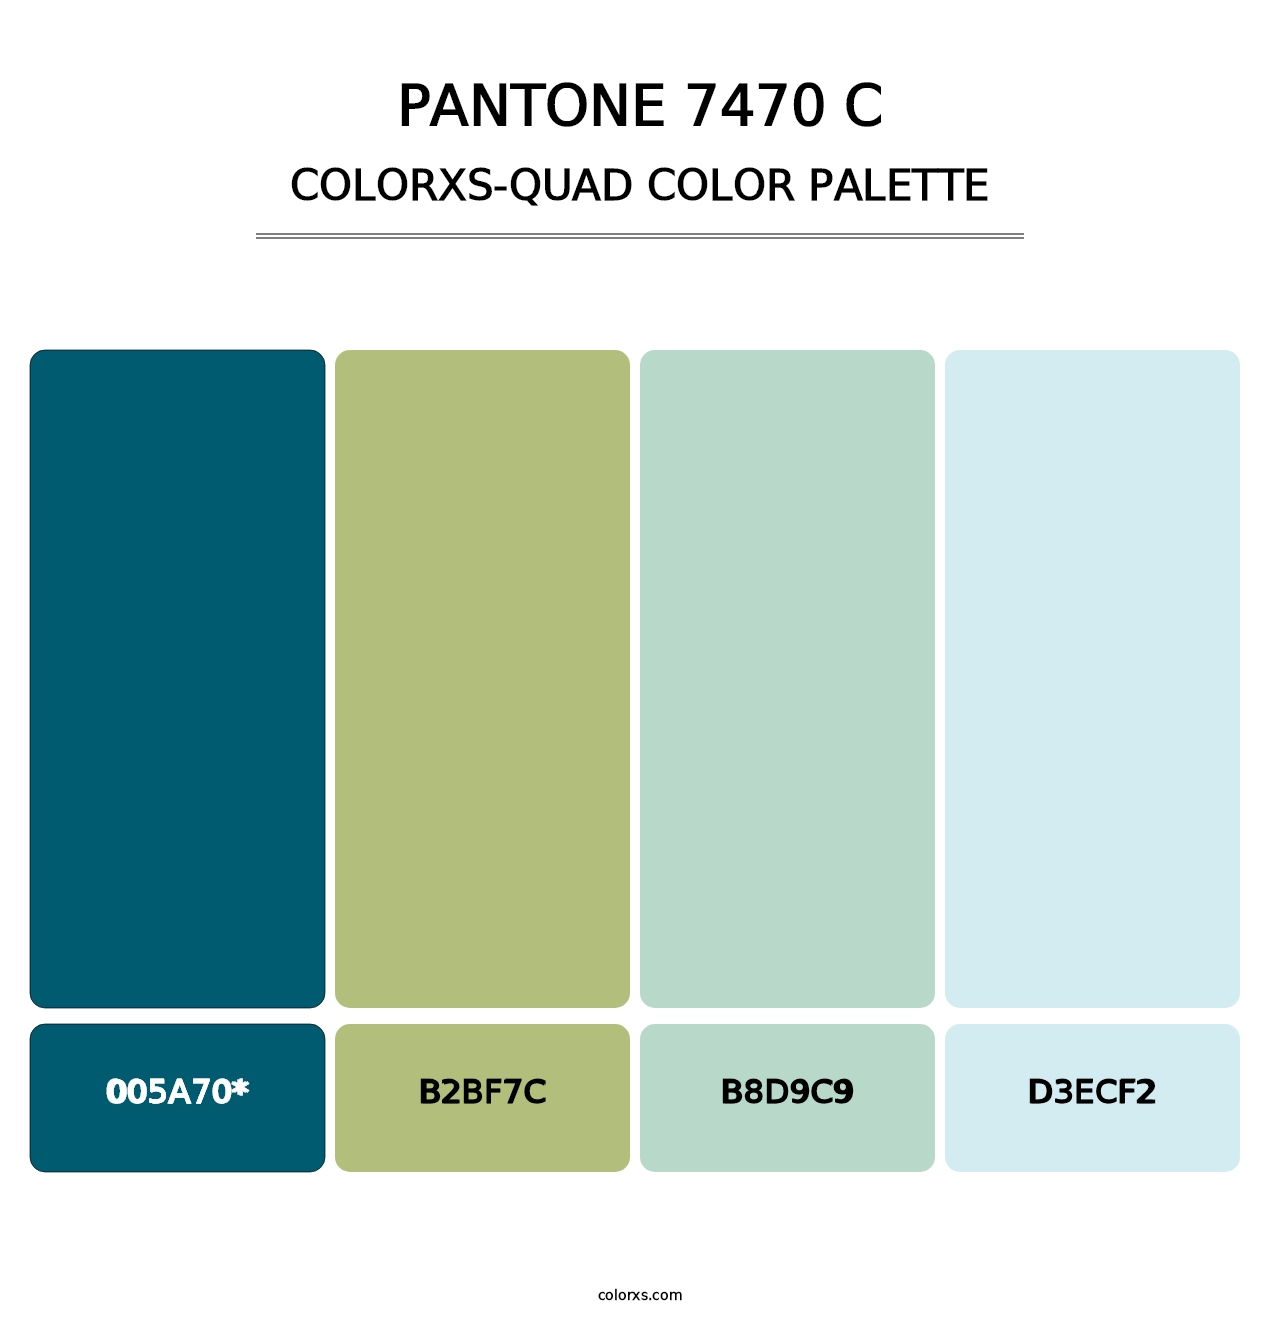 PANTONE 7470 C - Colorxs Quad Palette